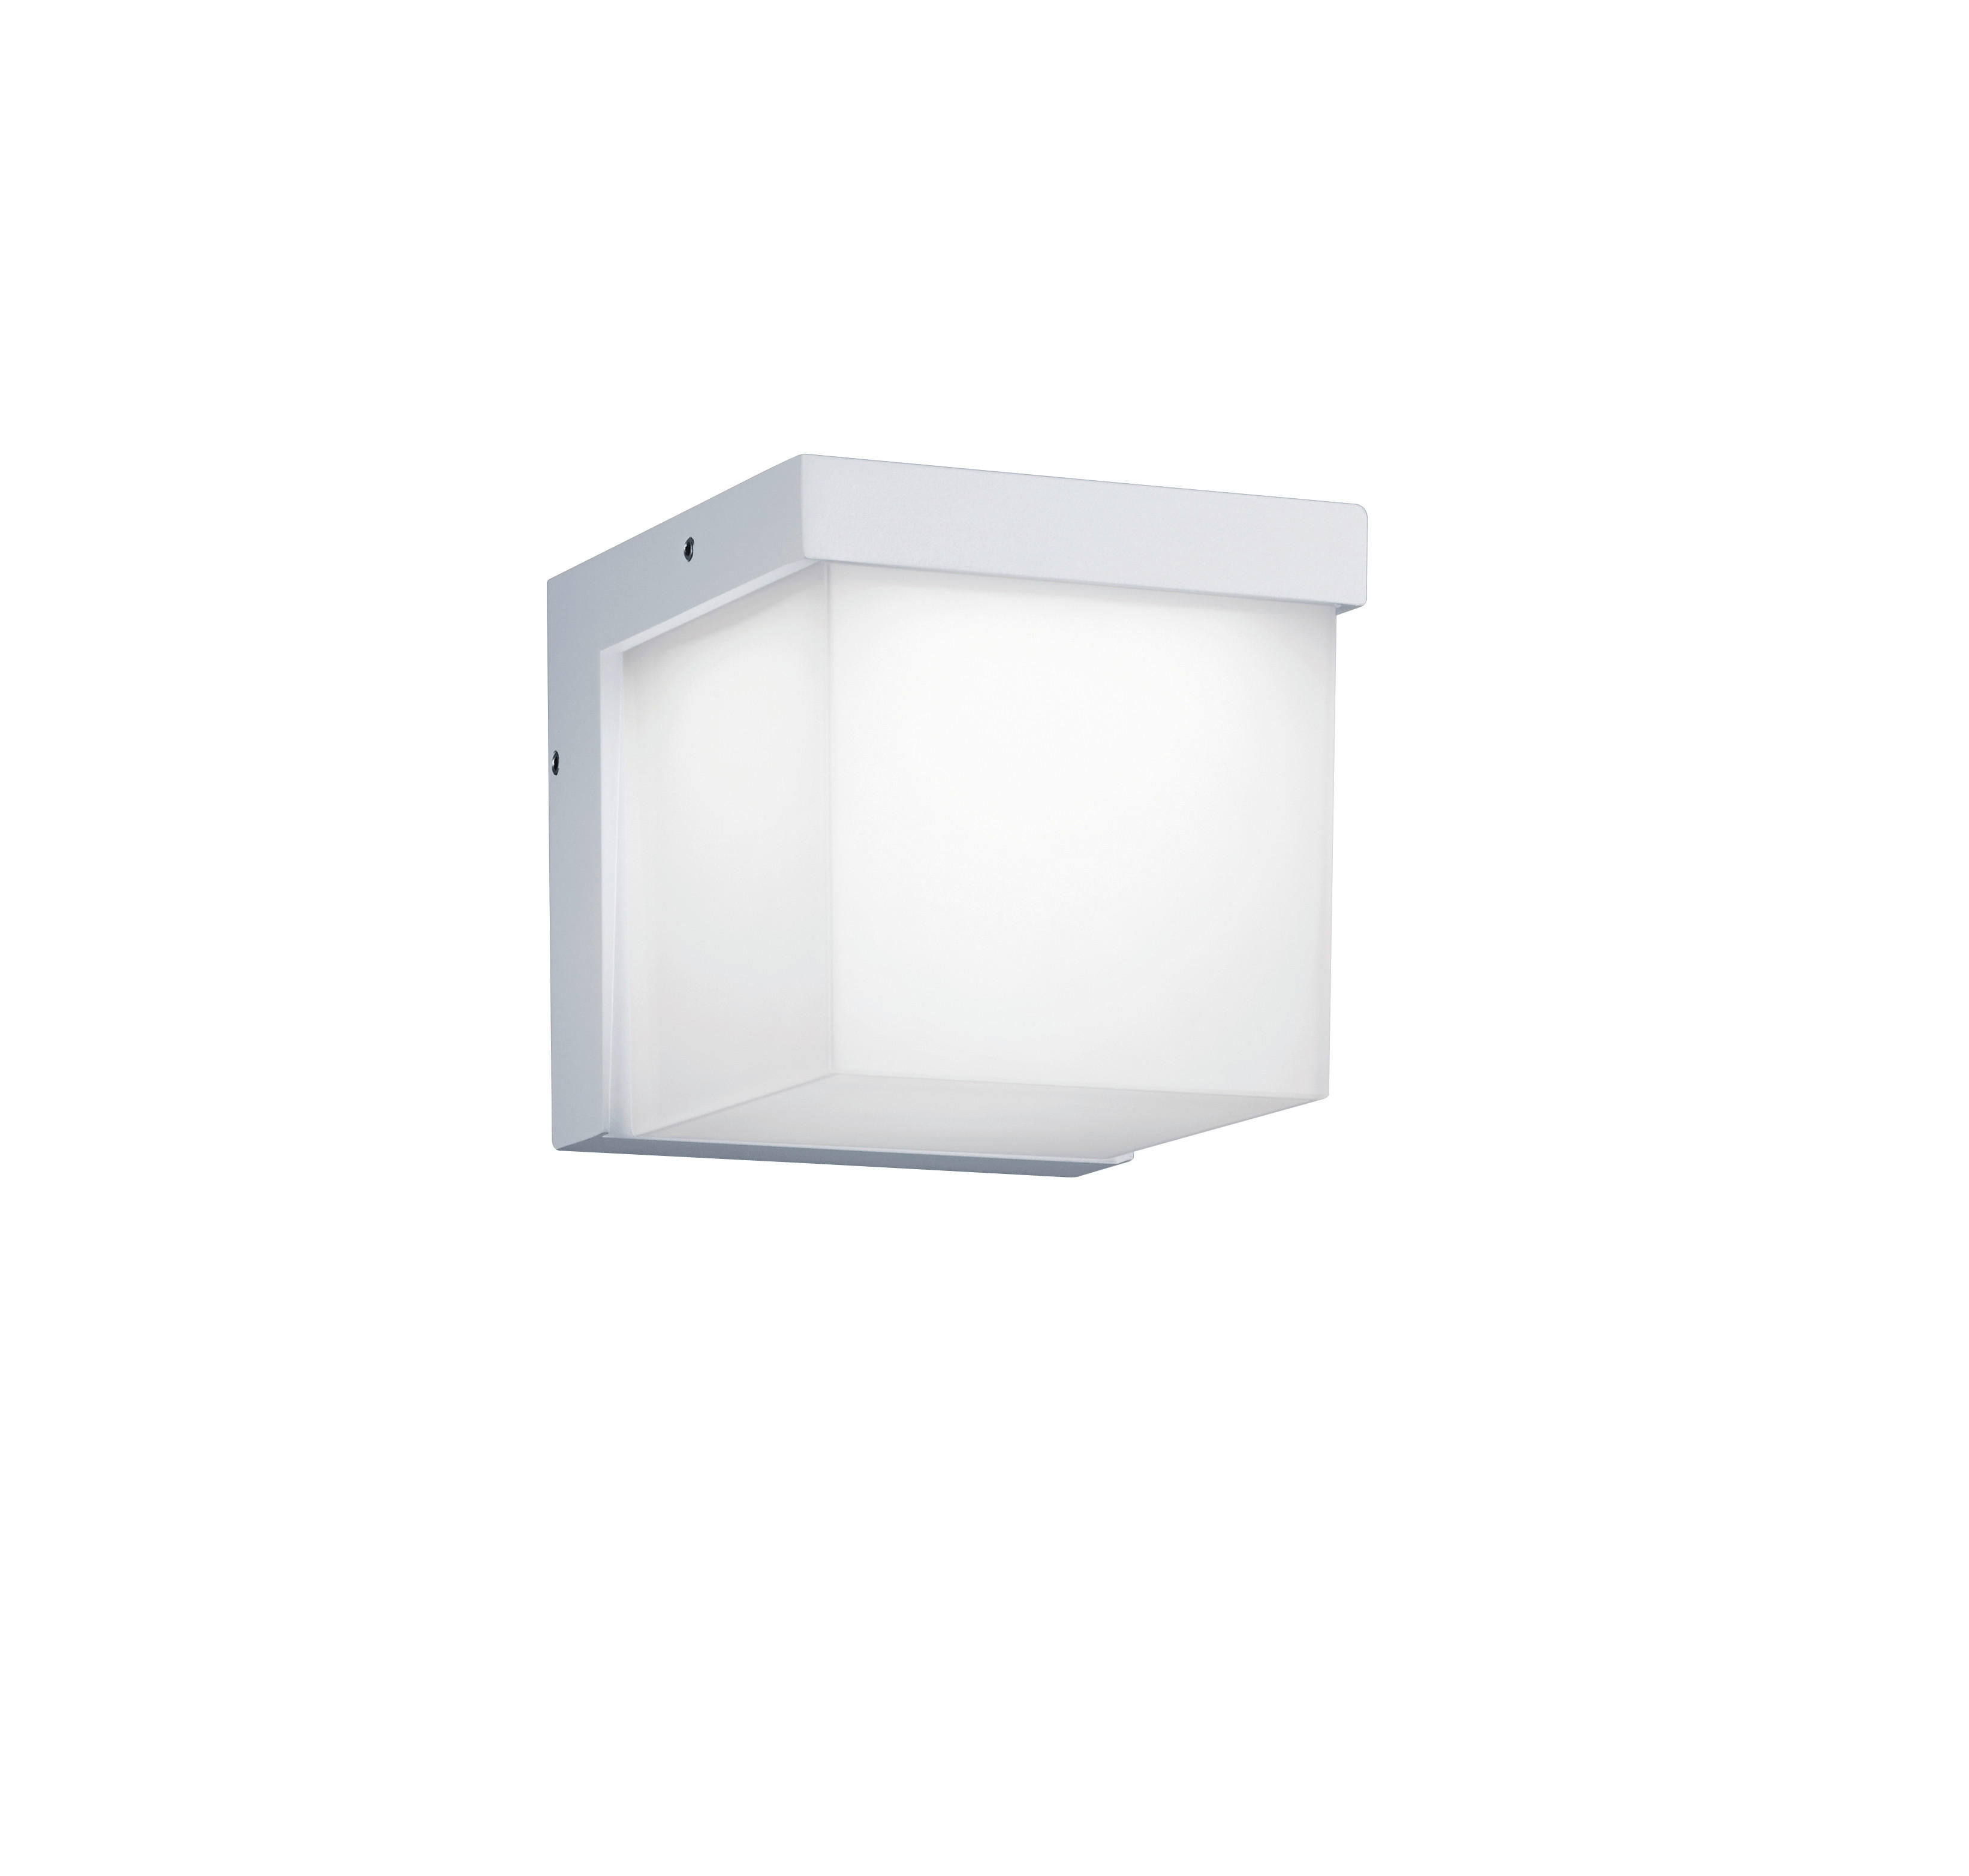 LED-AUßENLEUCHTE   - Alufarben/Weiß, LIFESTYLE, Kunststoff/Metall (11,7/12,00/13,9cm) - Trio Leuchten